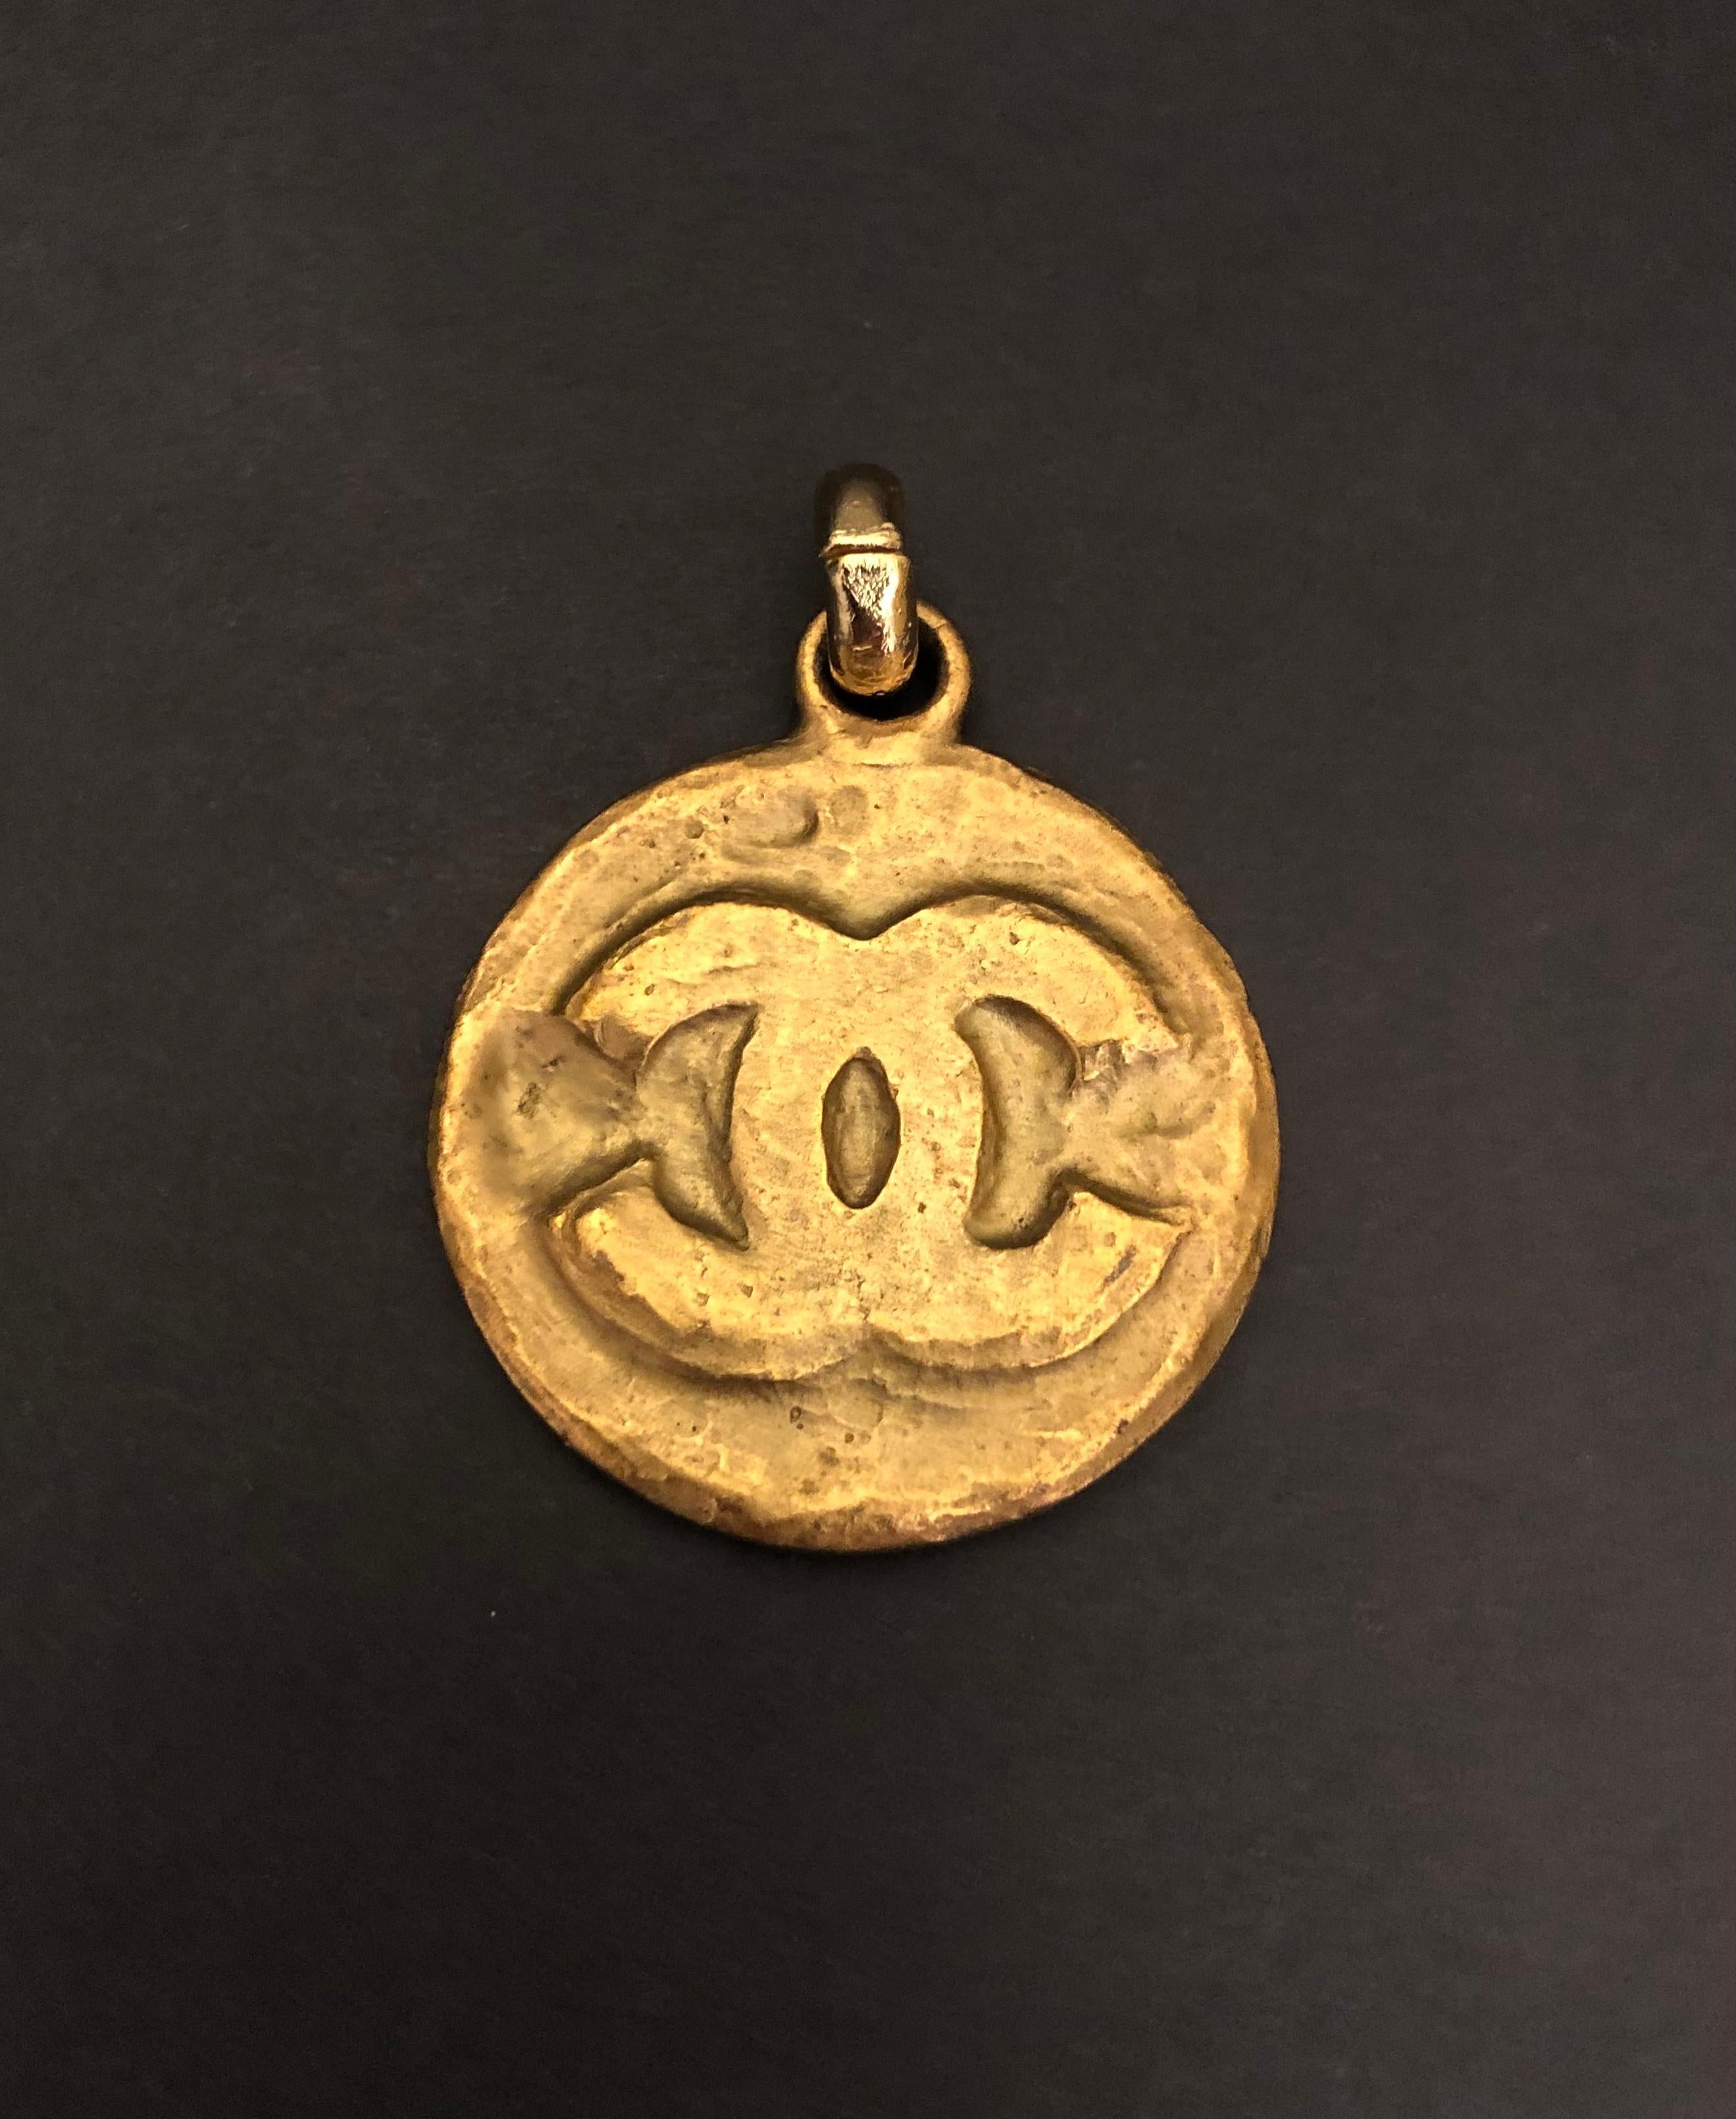 Diese Vintage CHANEL gold getönten CC Medaillon Charme, dass ein Teil eines Vintage CHANEL Schlüsselanhänger war, ist aus gold getönten Metall in byzantinischen Stil gefertigt. Maße: ca. 4 x 4,7 cm. Dieser Charme kann an einer goldfarbenen Kette